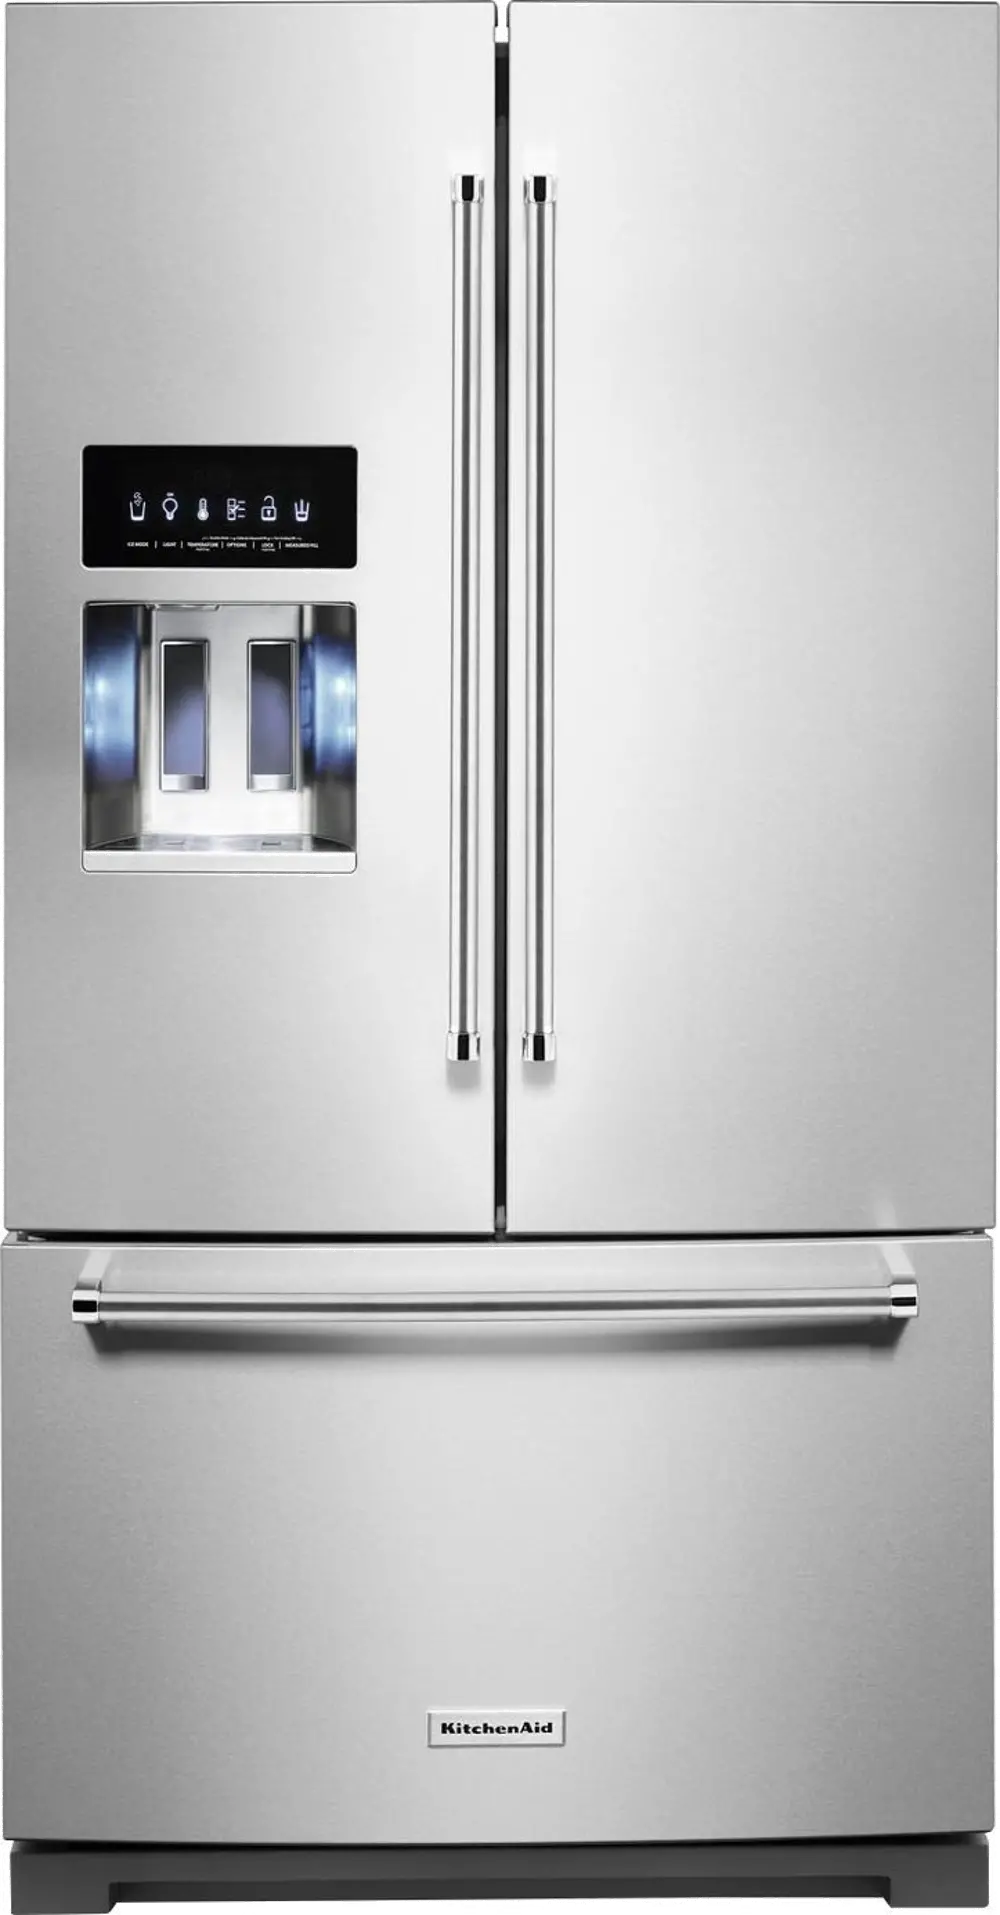 KRFF577KPS Kitchenaid 26.8 cu ft French Door Refrigerator - Stainless Steel-1